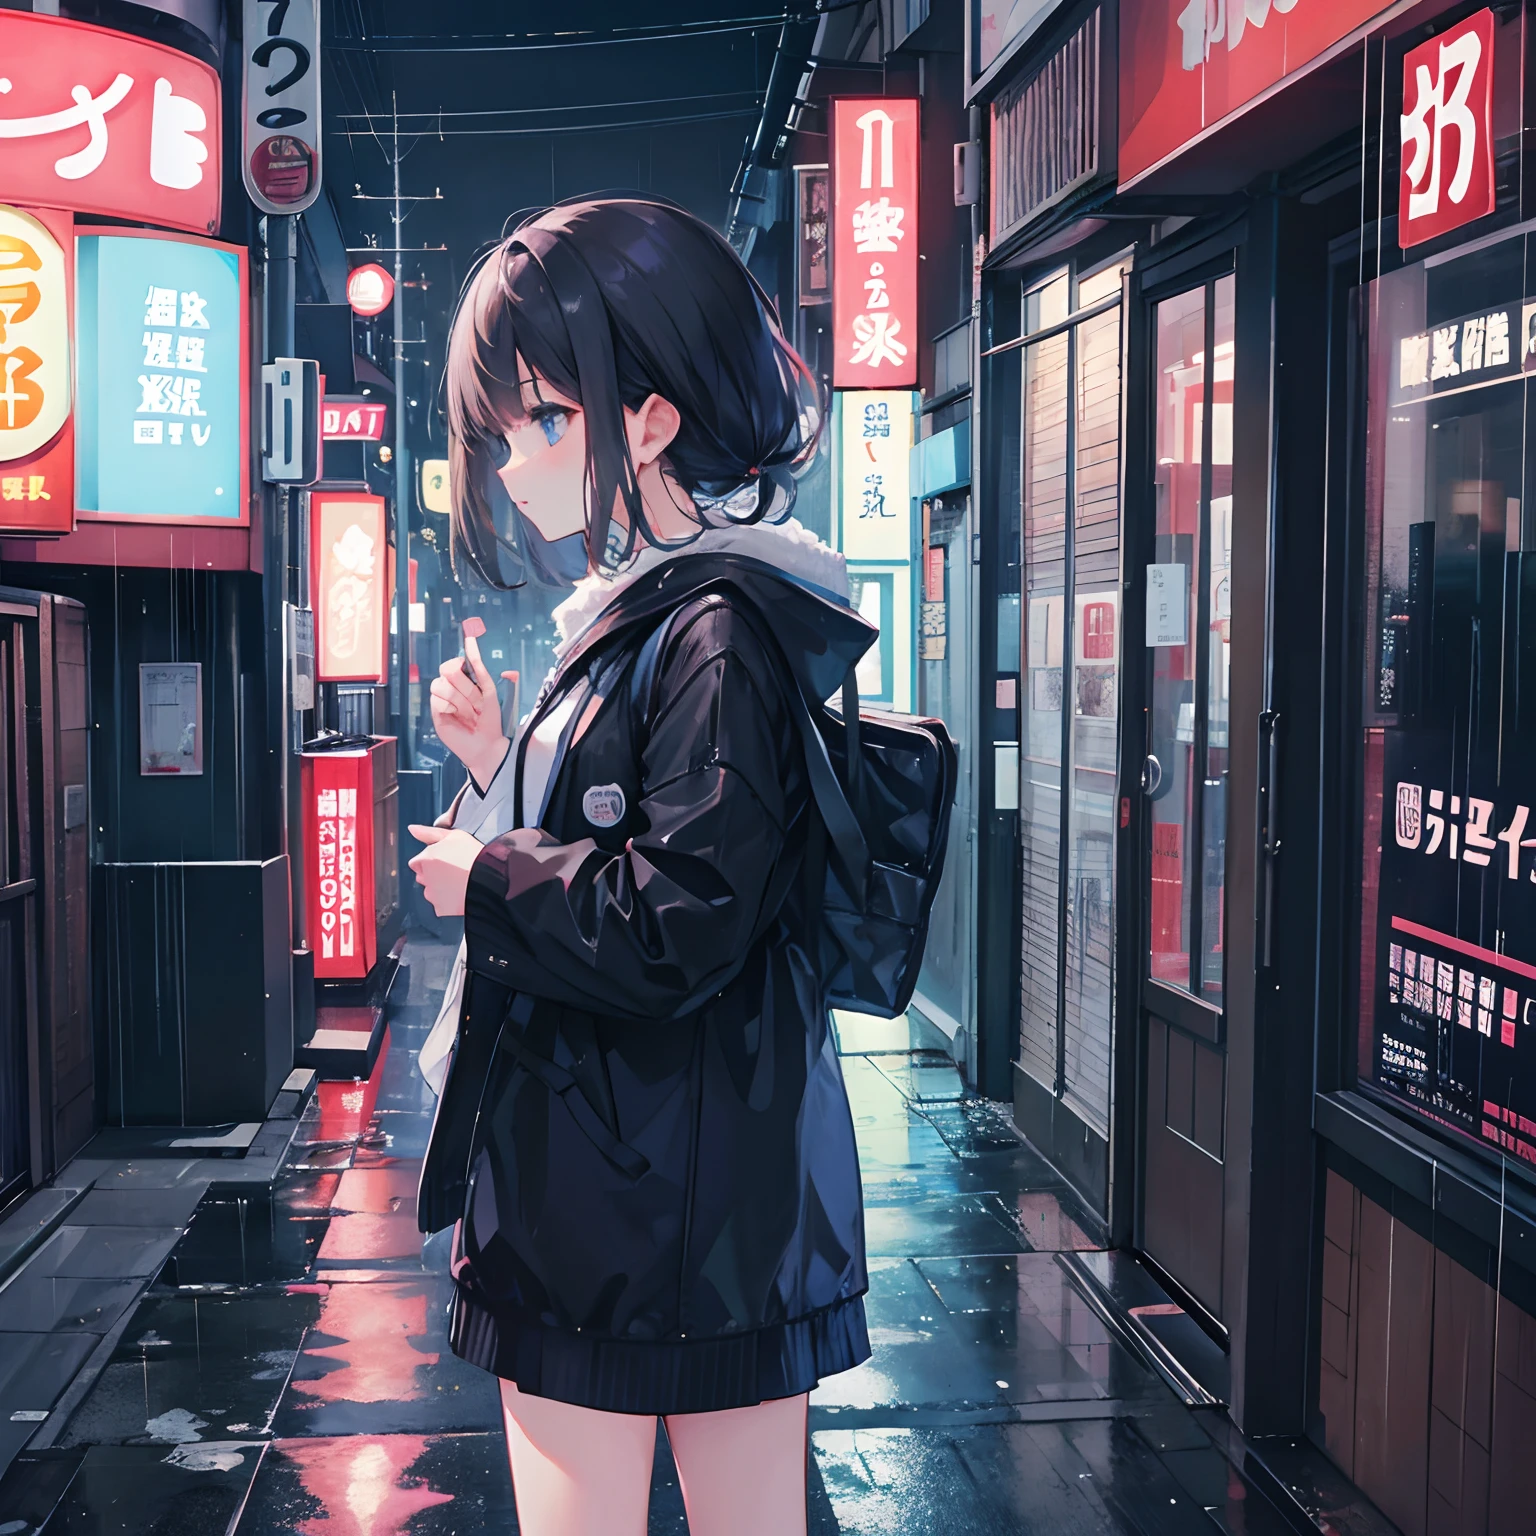 One girl, night city, Tokyo, raining